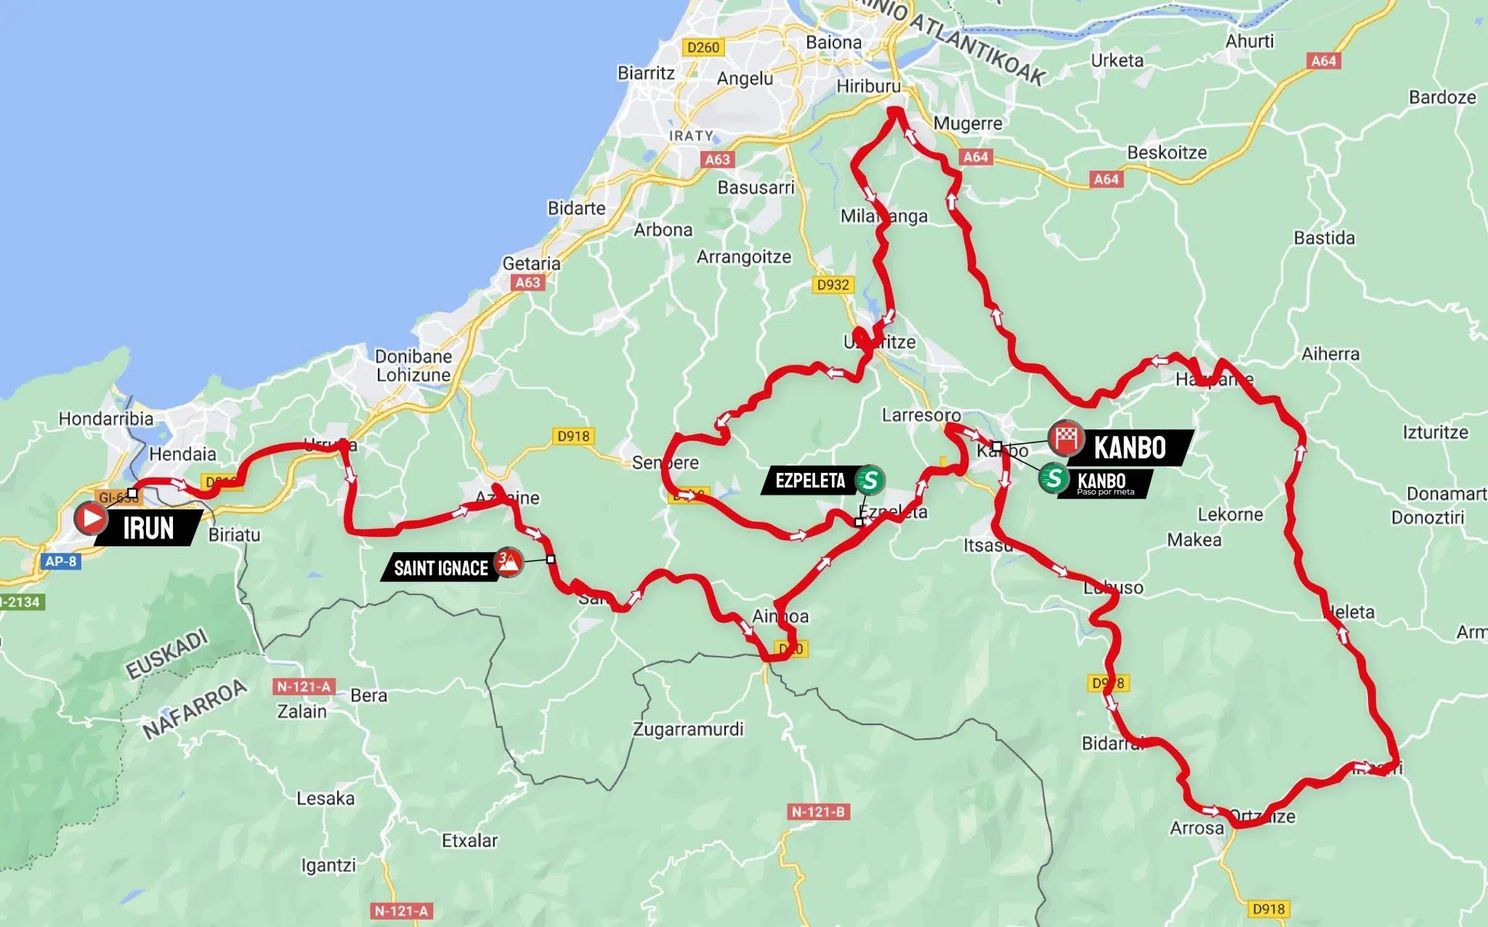 ANTEVISÃO - Volta ao País Basco 2ª etapa: Como será a chegada a Kanbo? Um ataque de longe, um sprint ou um "puncheur" a fazer a diferença